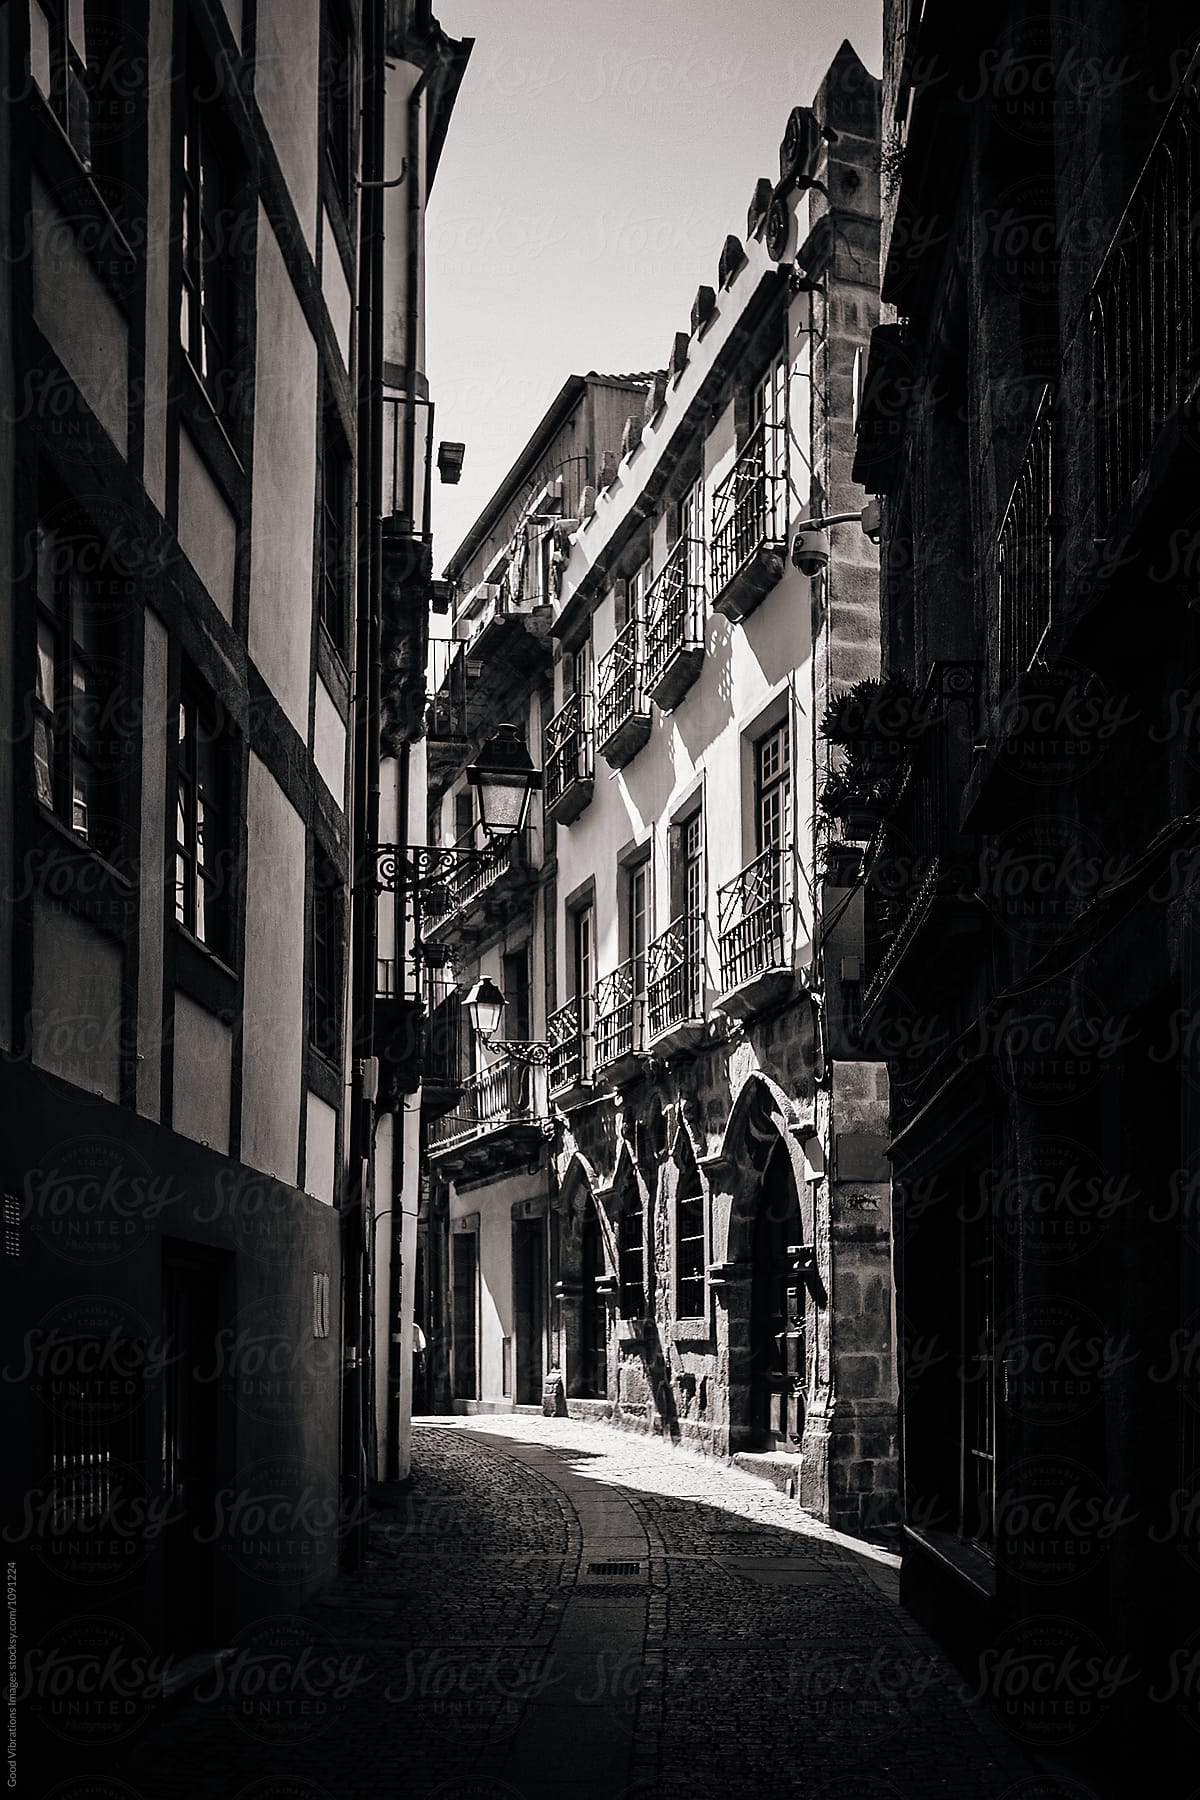 Dark alley in Oporto, Portugal